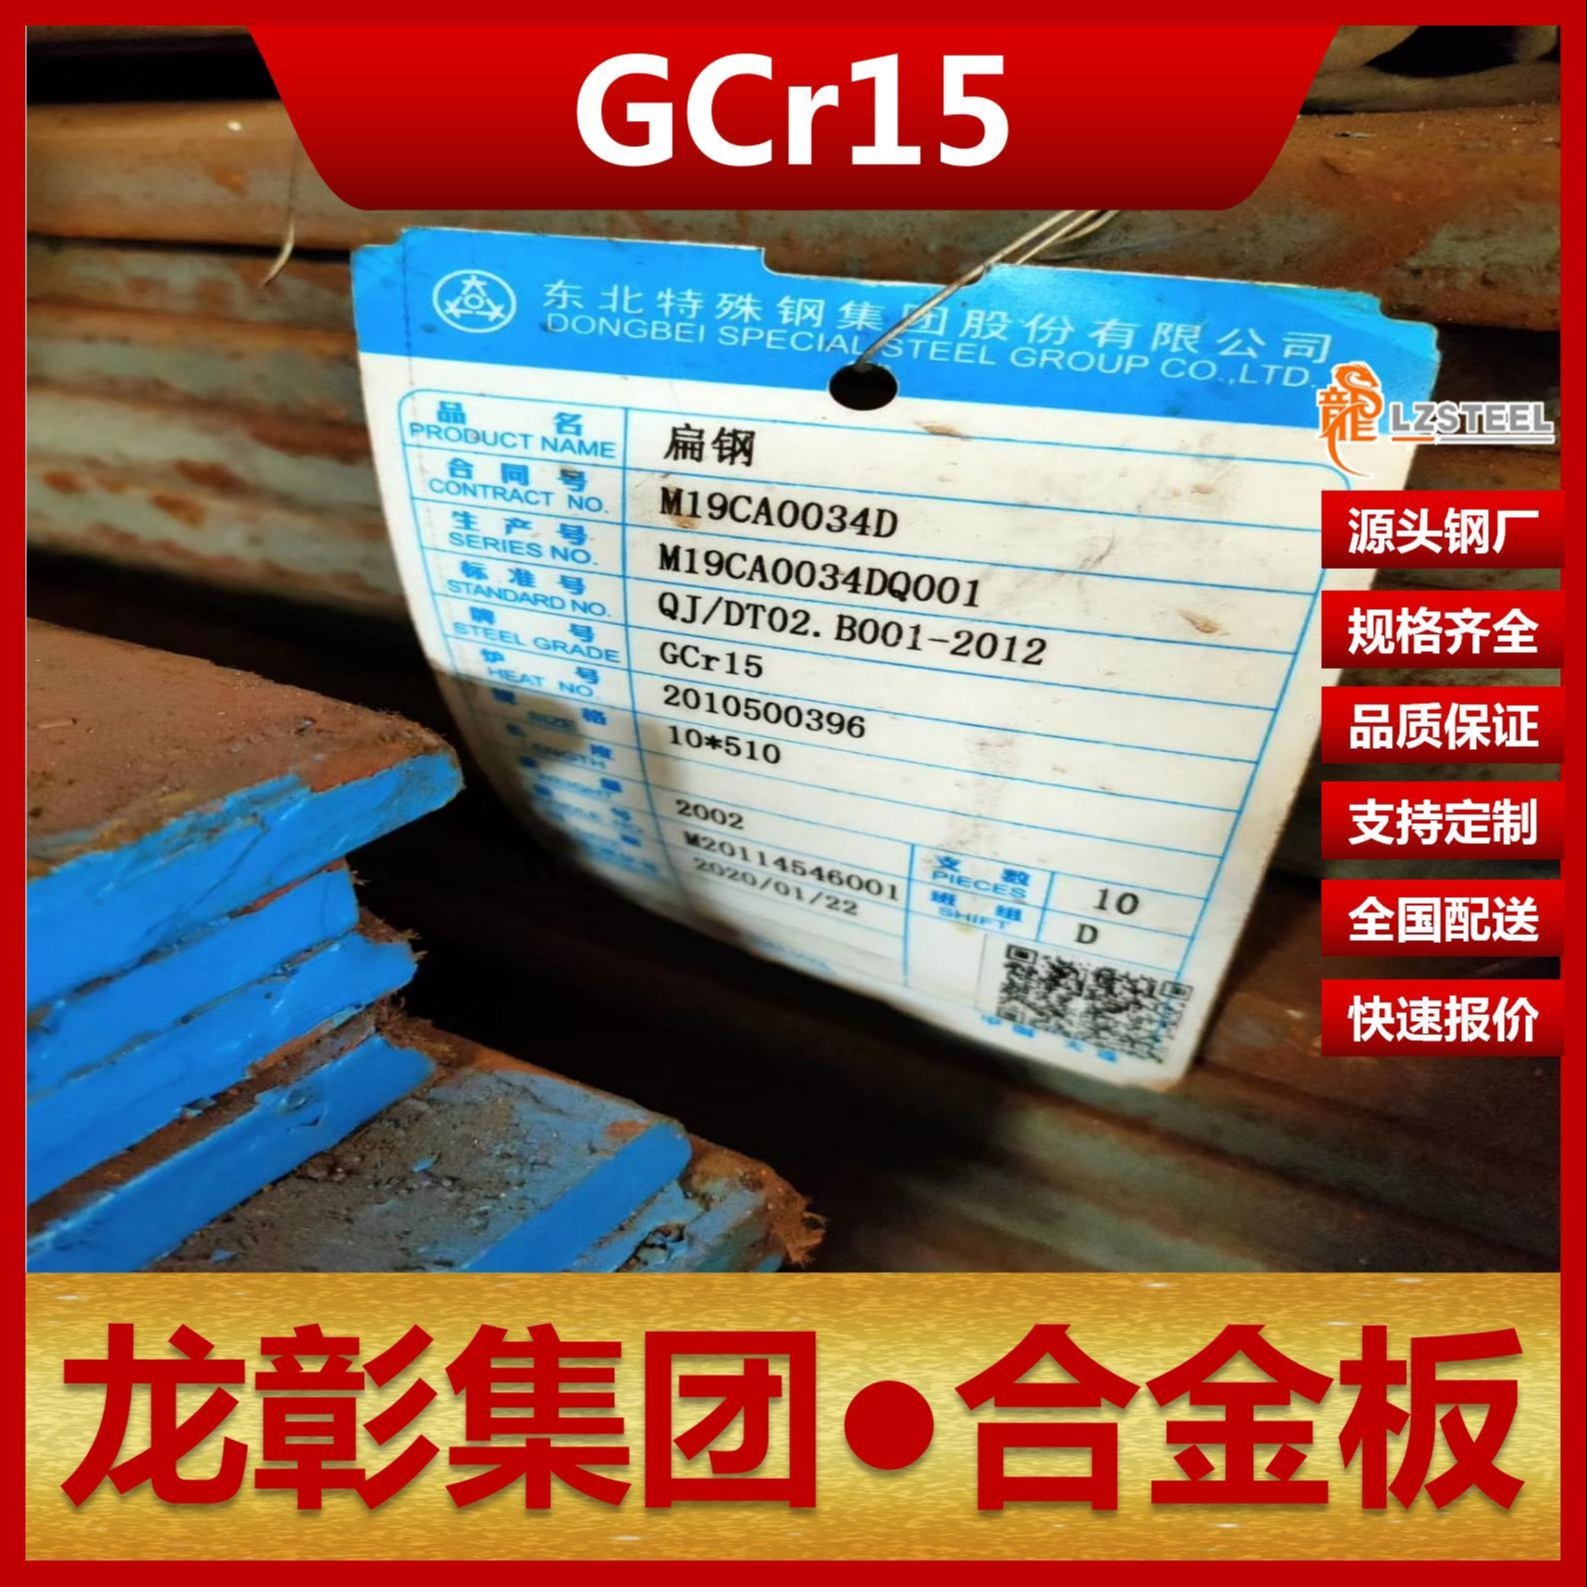 GCr15钢板现货批零 龙彰集团主营GCr15合金板卷材可开平分条图片